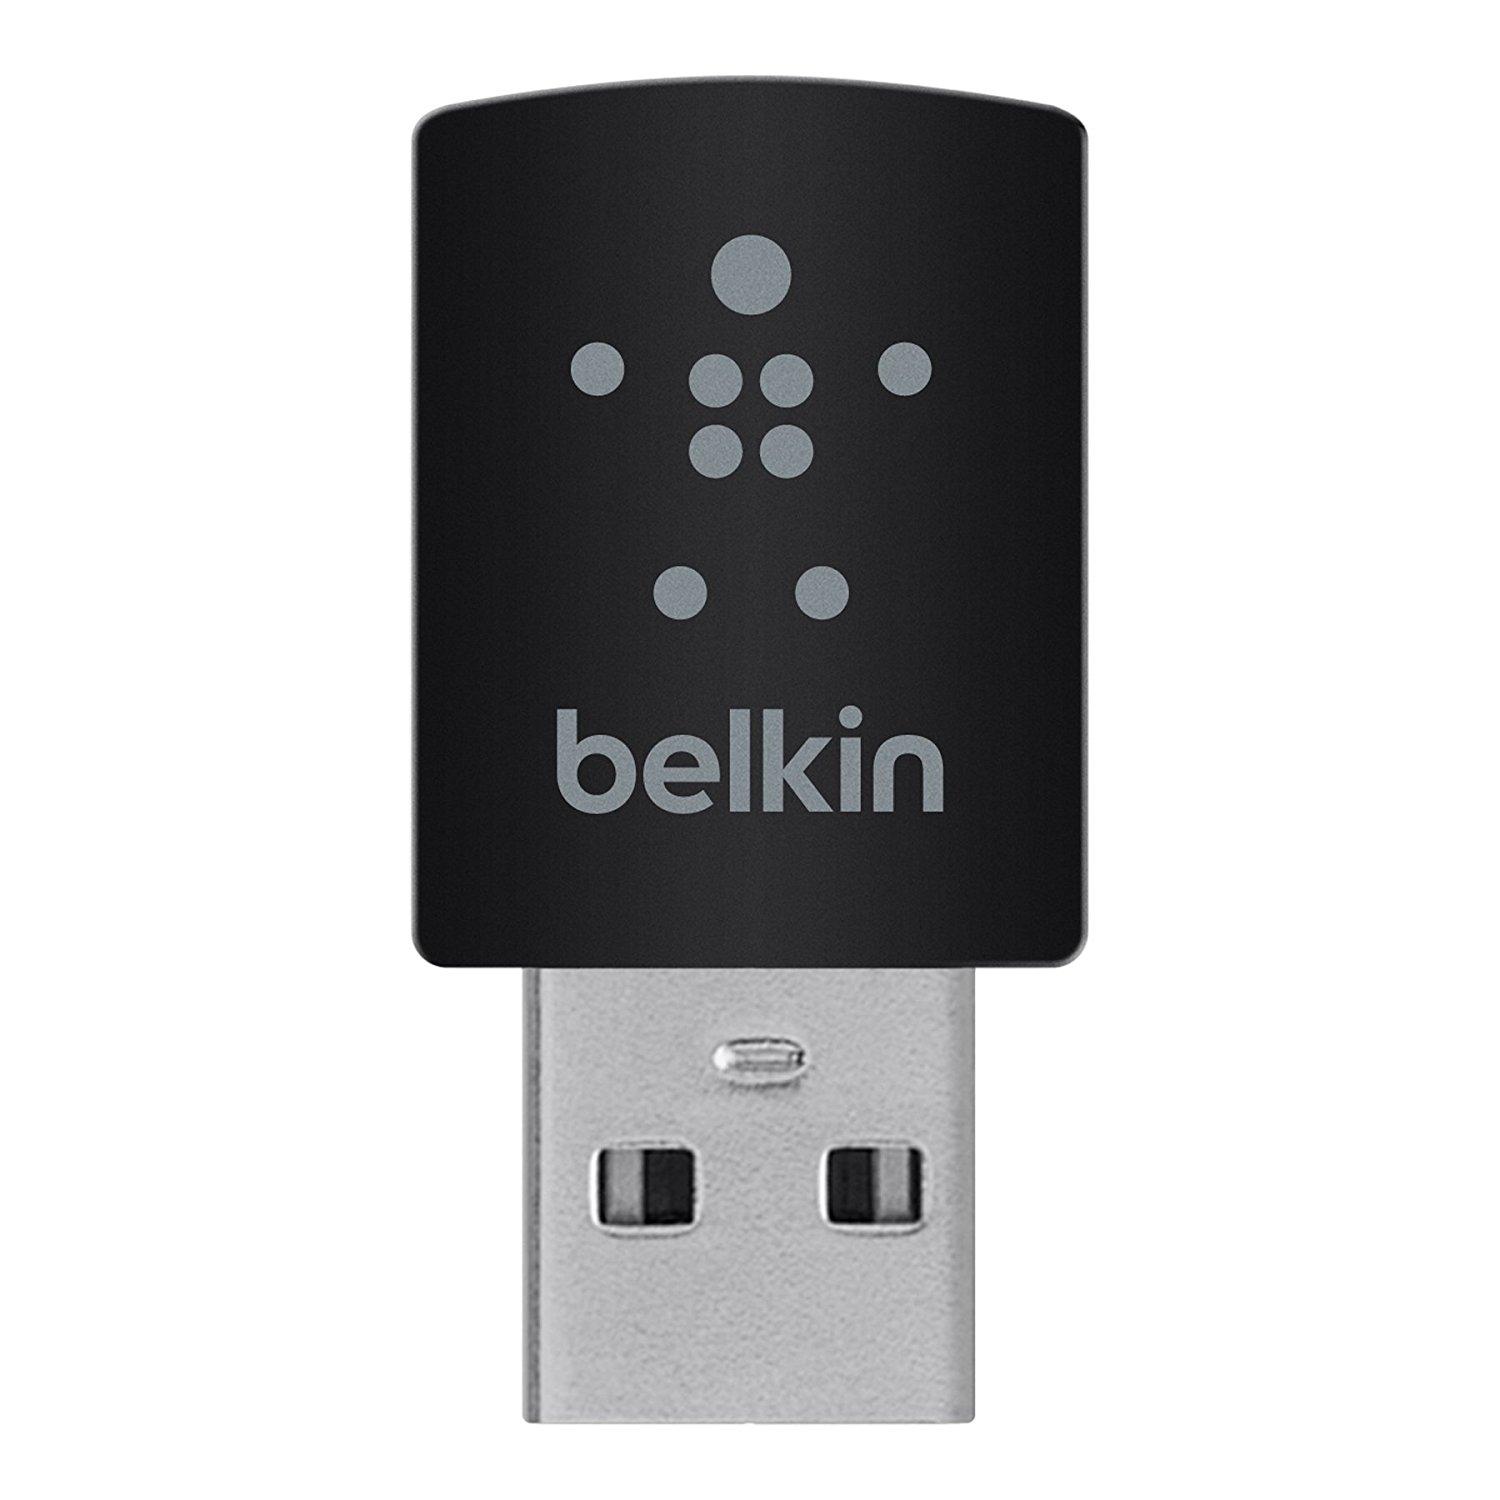 belkin n wireless usb for mac